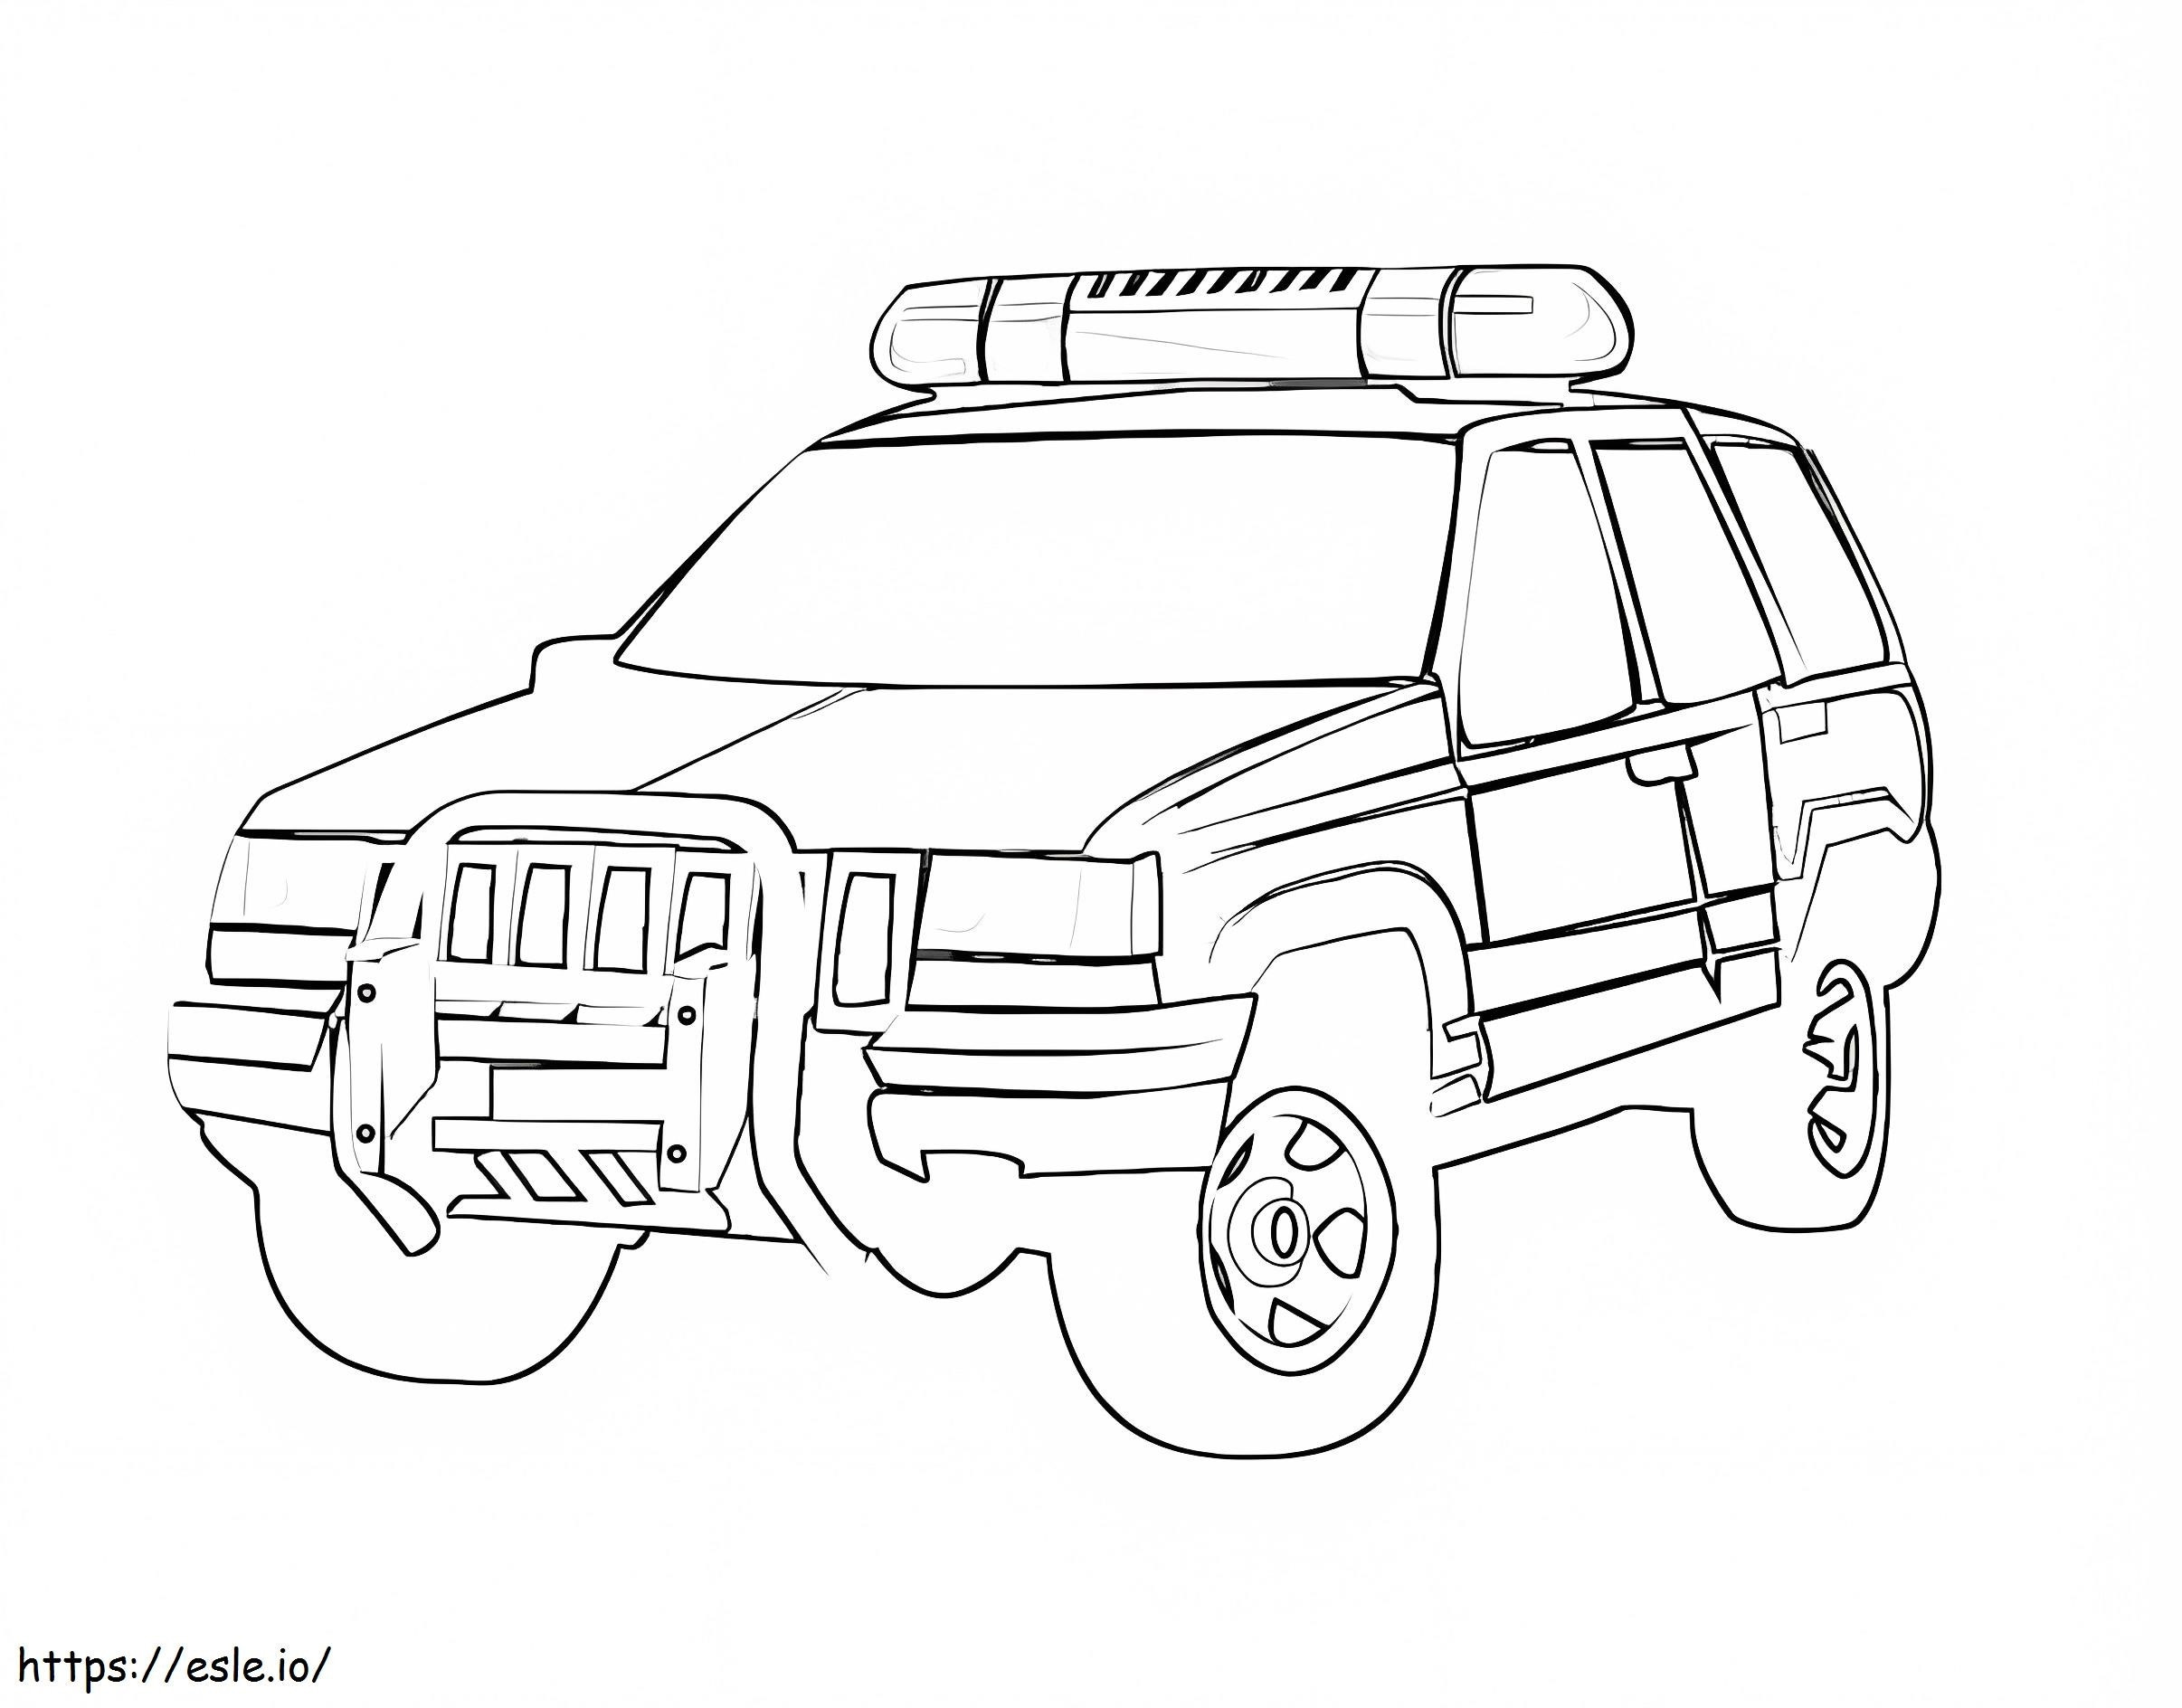 Ford Truck Polizeiauto ausmalbilder